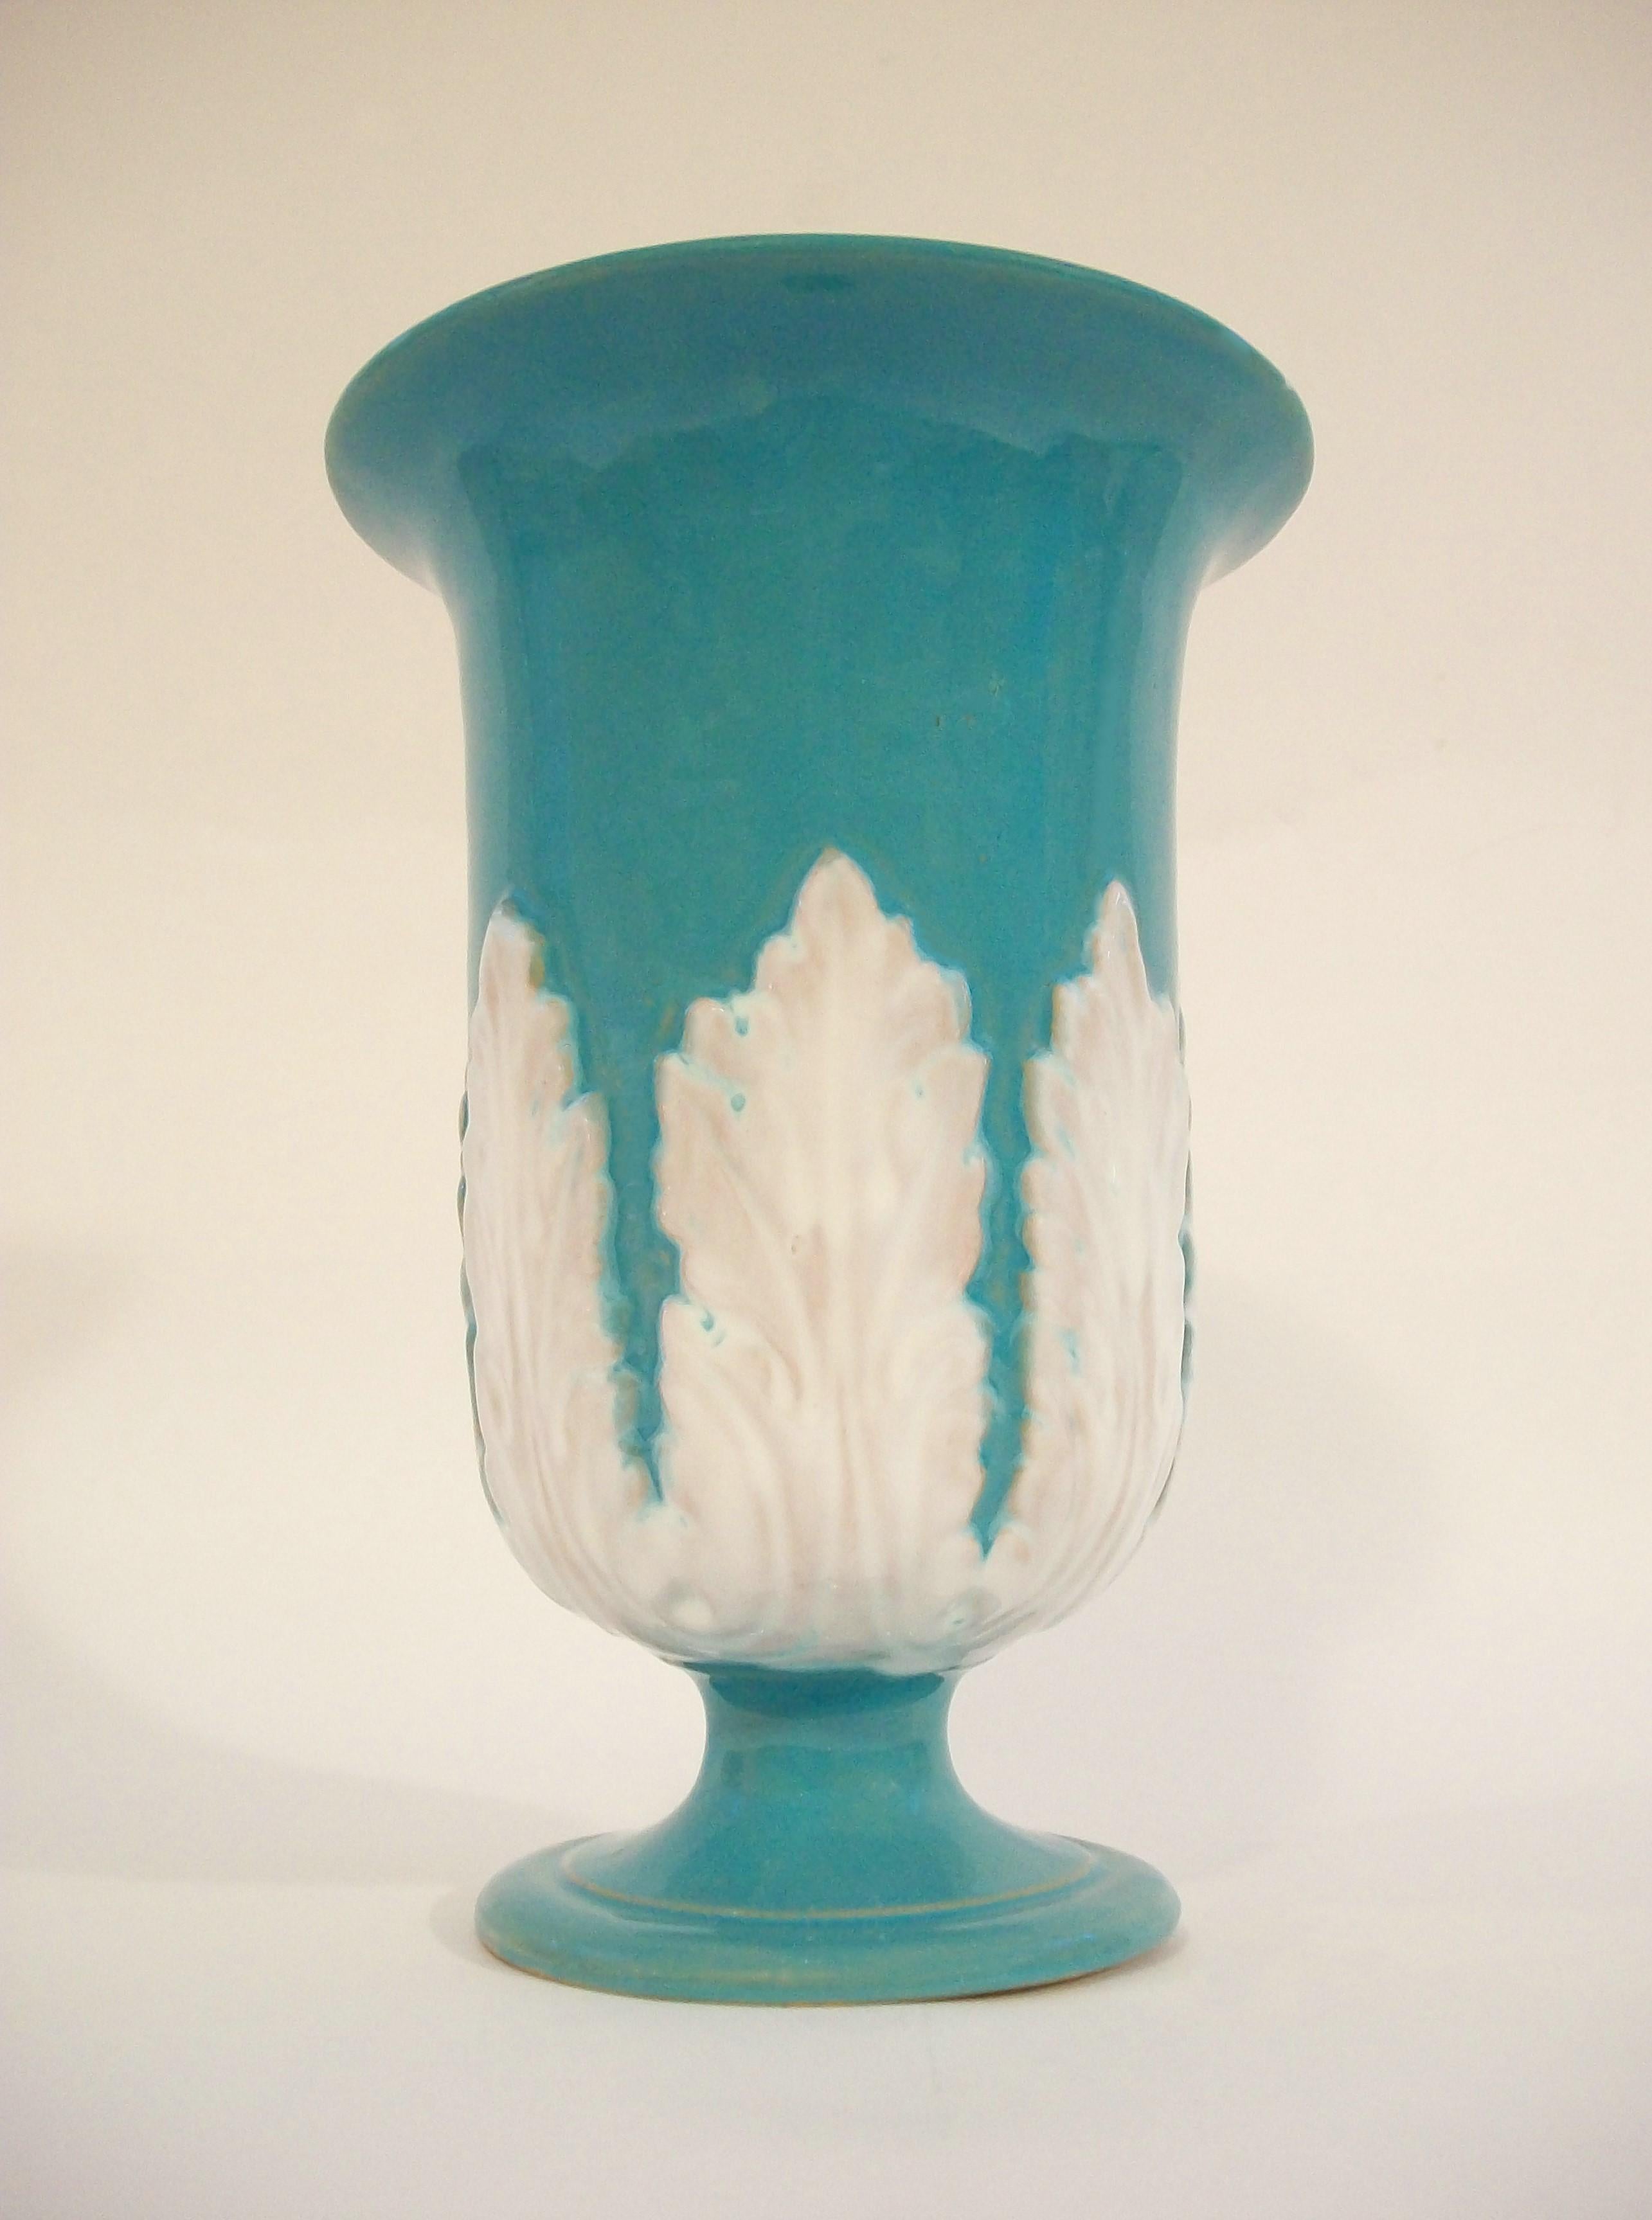 Grand vase en terre cuite en forme de trompette, émaillé turquoise, avec des feuilles d'acanthe émaillées en blanc sur la partie centrale, base conique, intérieur émaillé, non signé, numéro de modèle 4021.90 et Italie sur le fond, vers les années